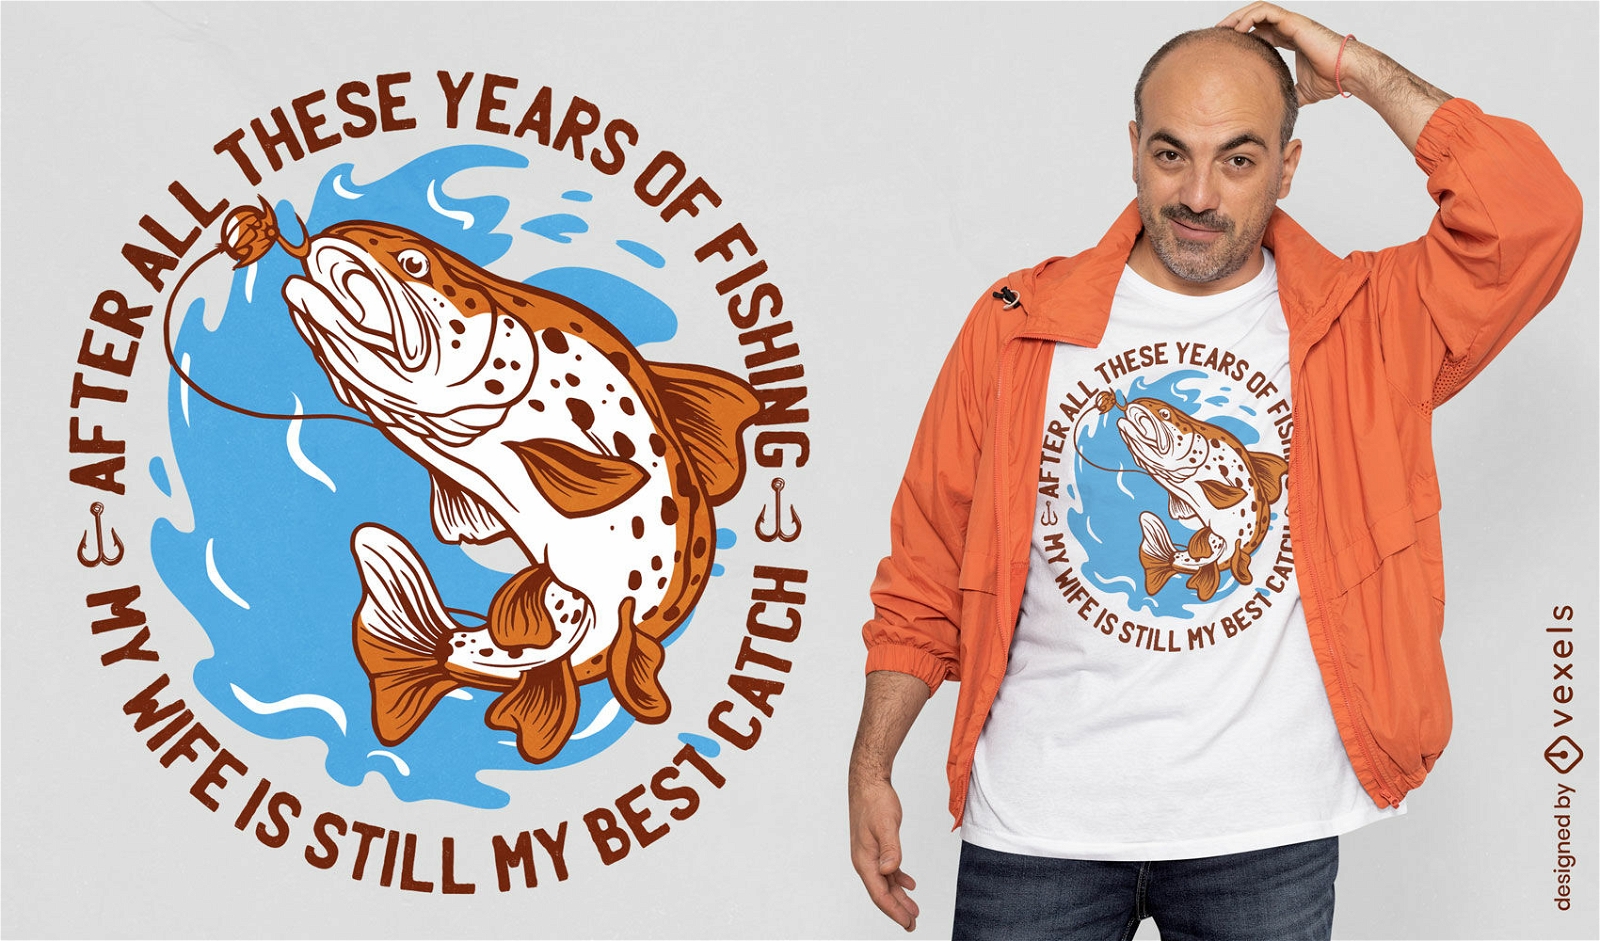 Diseño de camiseta con cita de pesca y esposa.